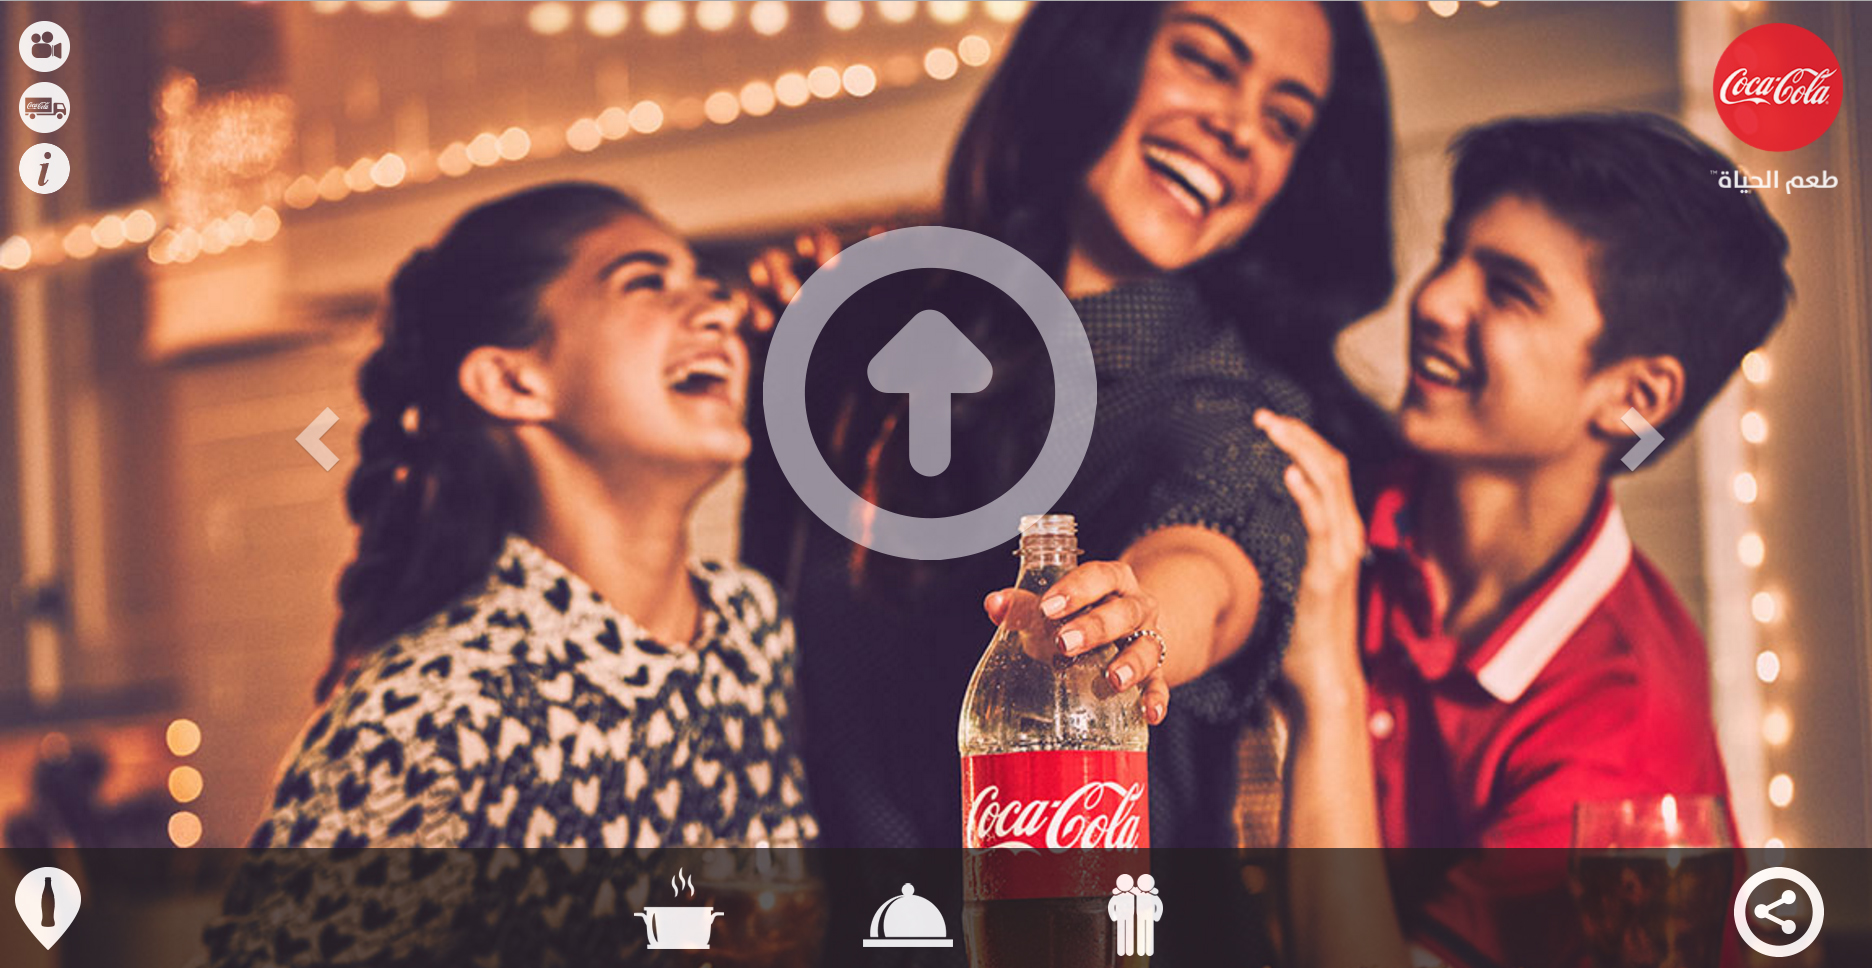 كوكا كولا تُطلق فعاليات مثيرة وخاصة  في اطار حملة طعم الحياة برمضان مع كوكا كولا